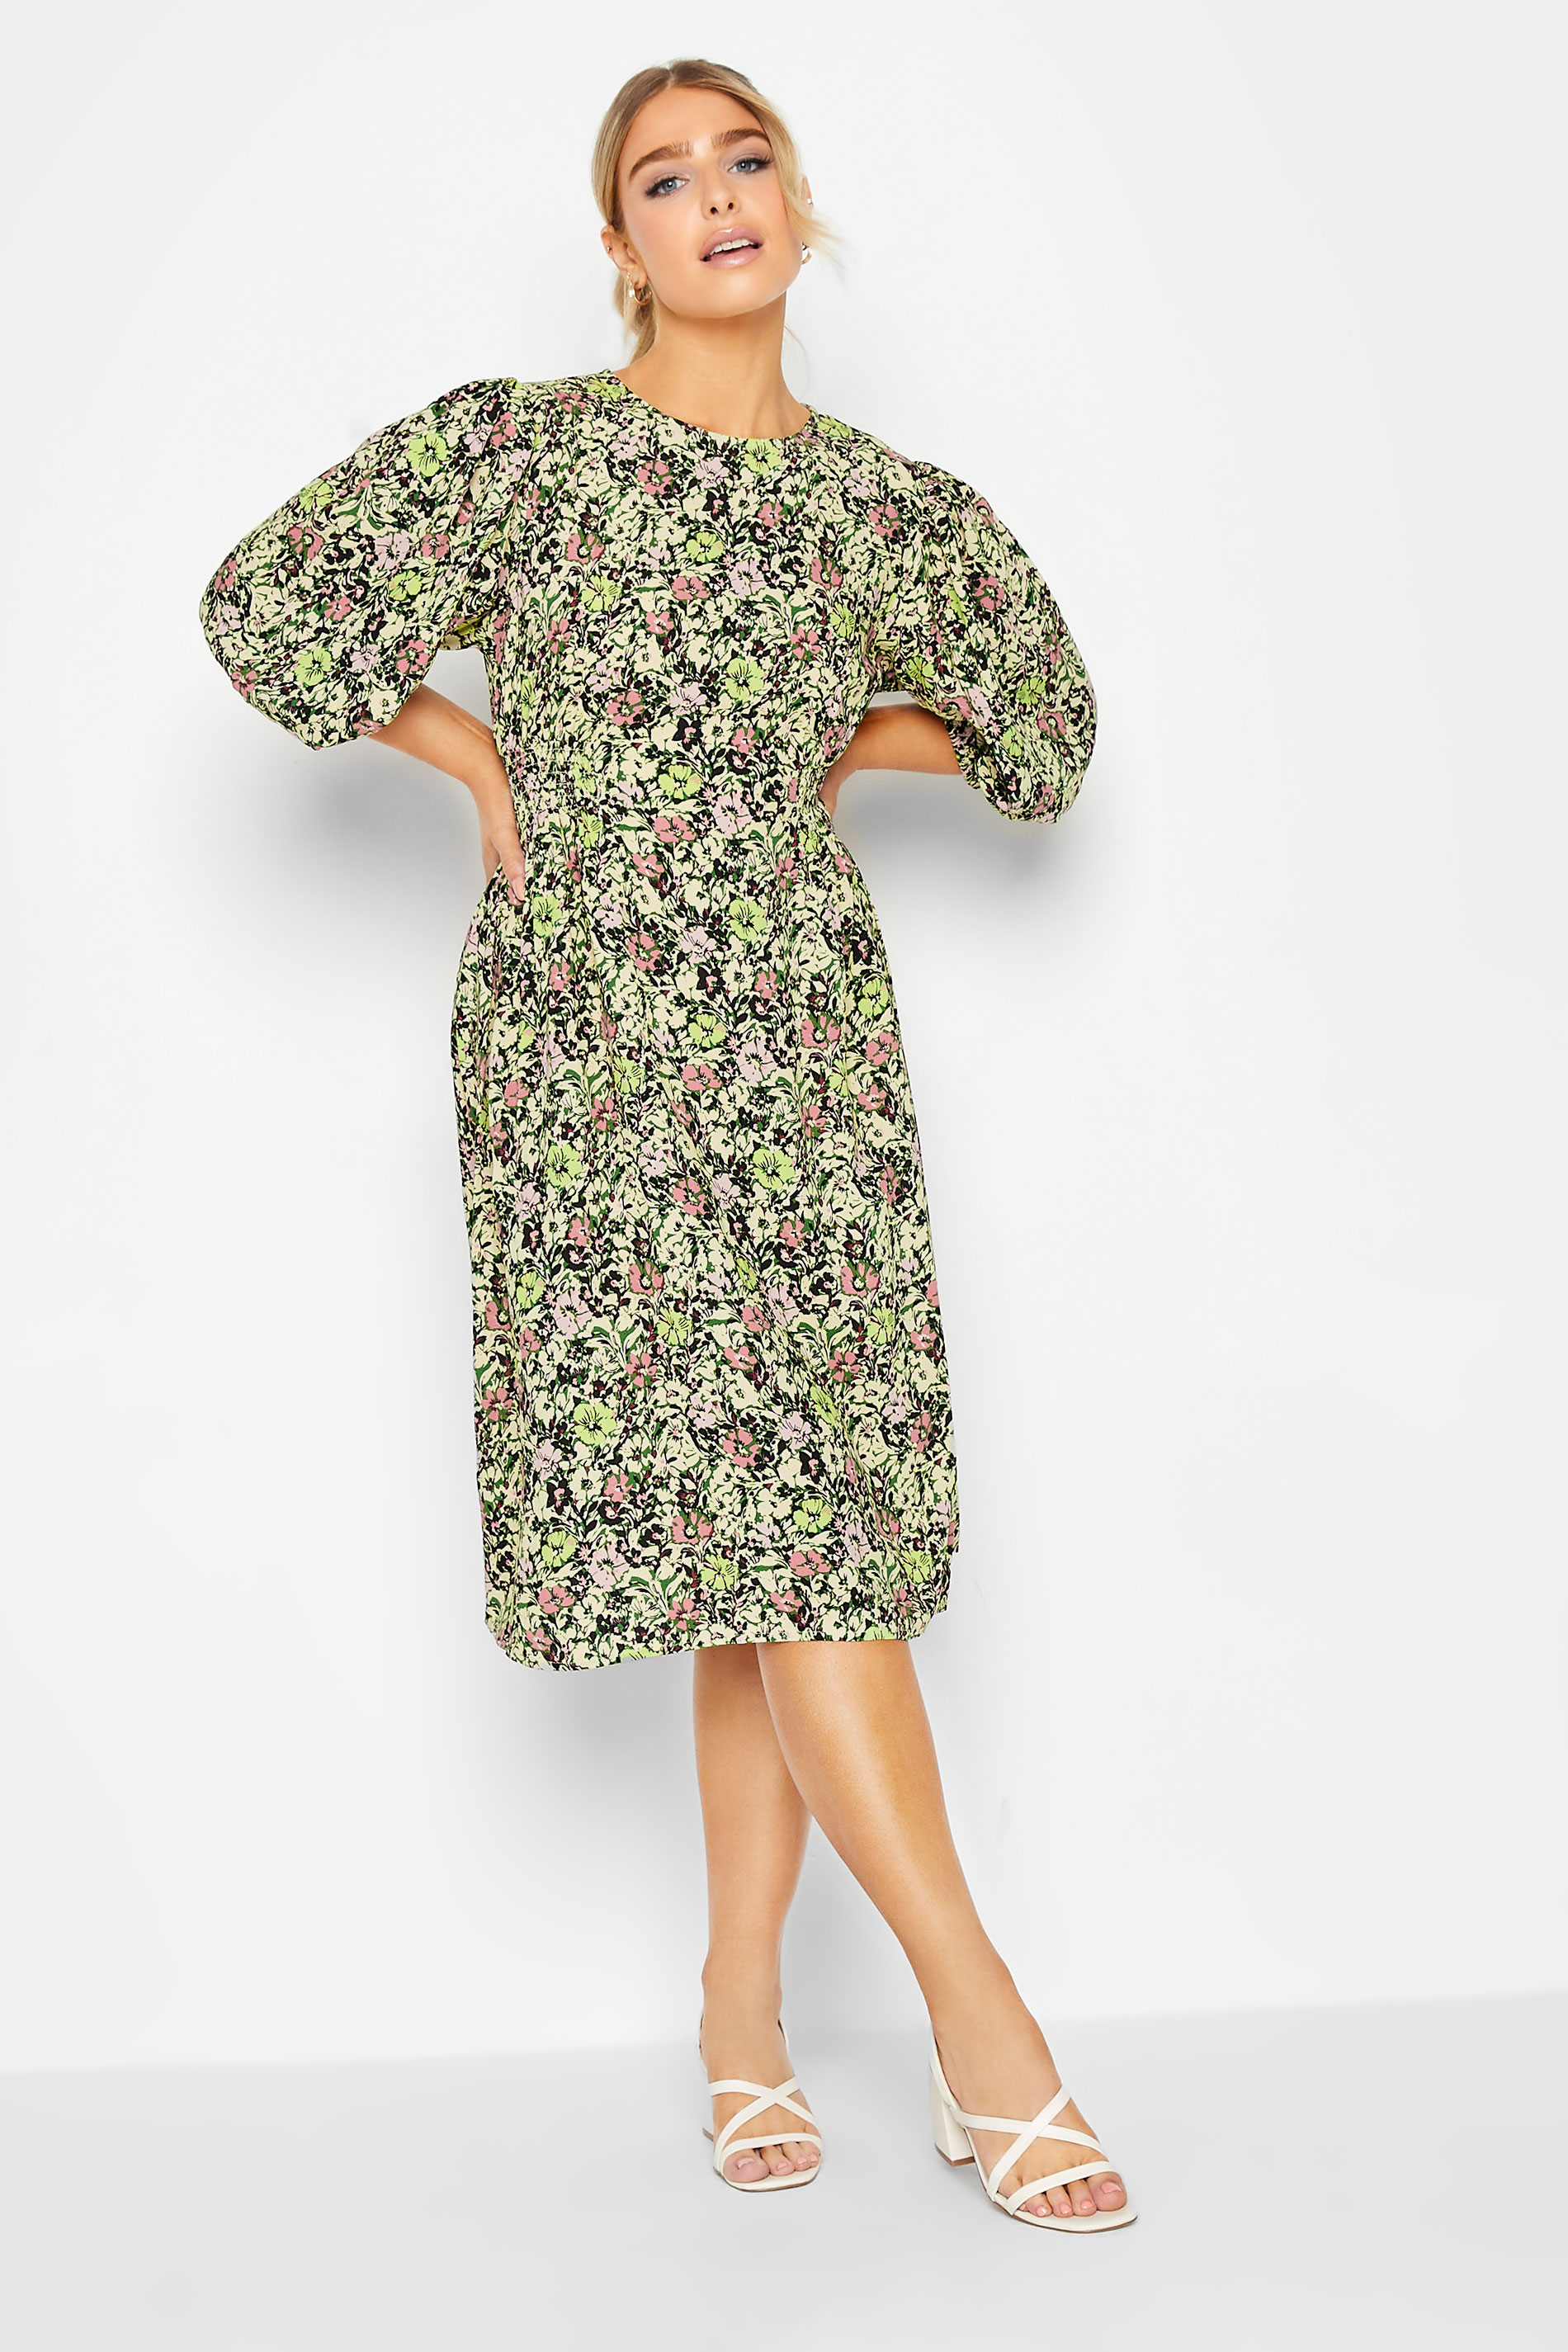 M&Co Green Floral Print Midi Dress | M&Co  3